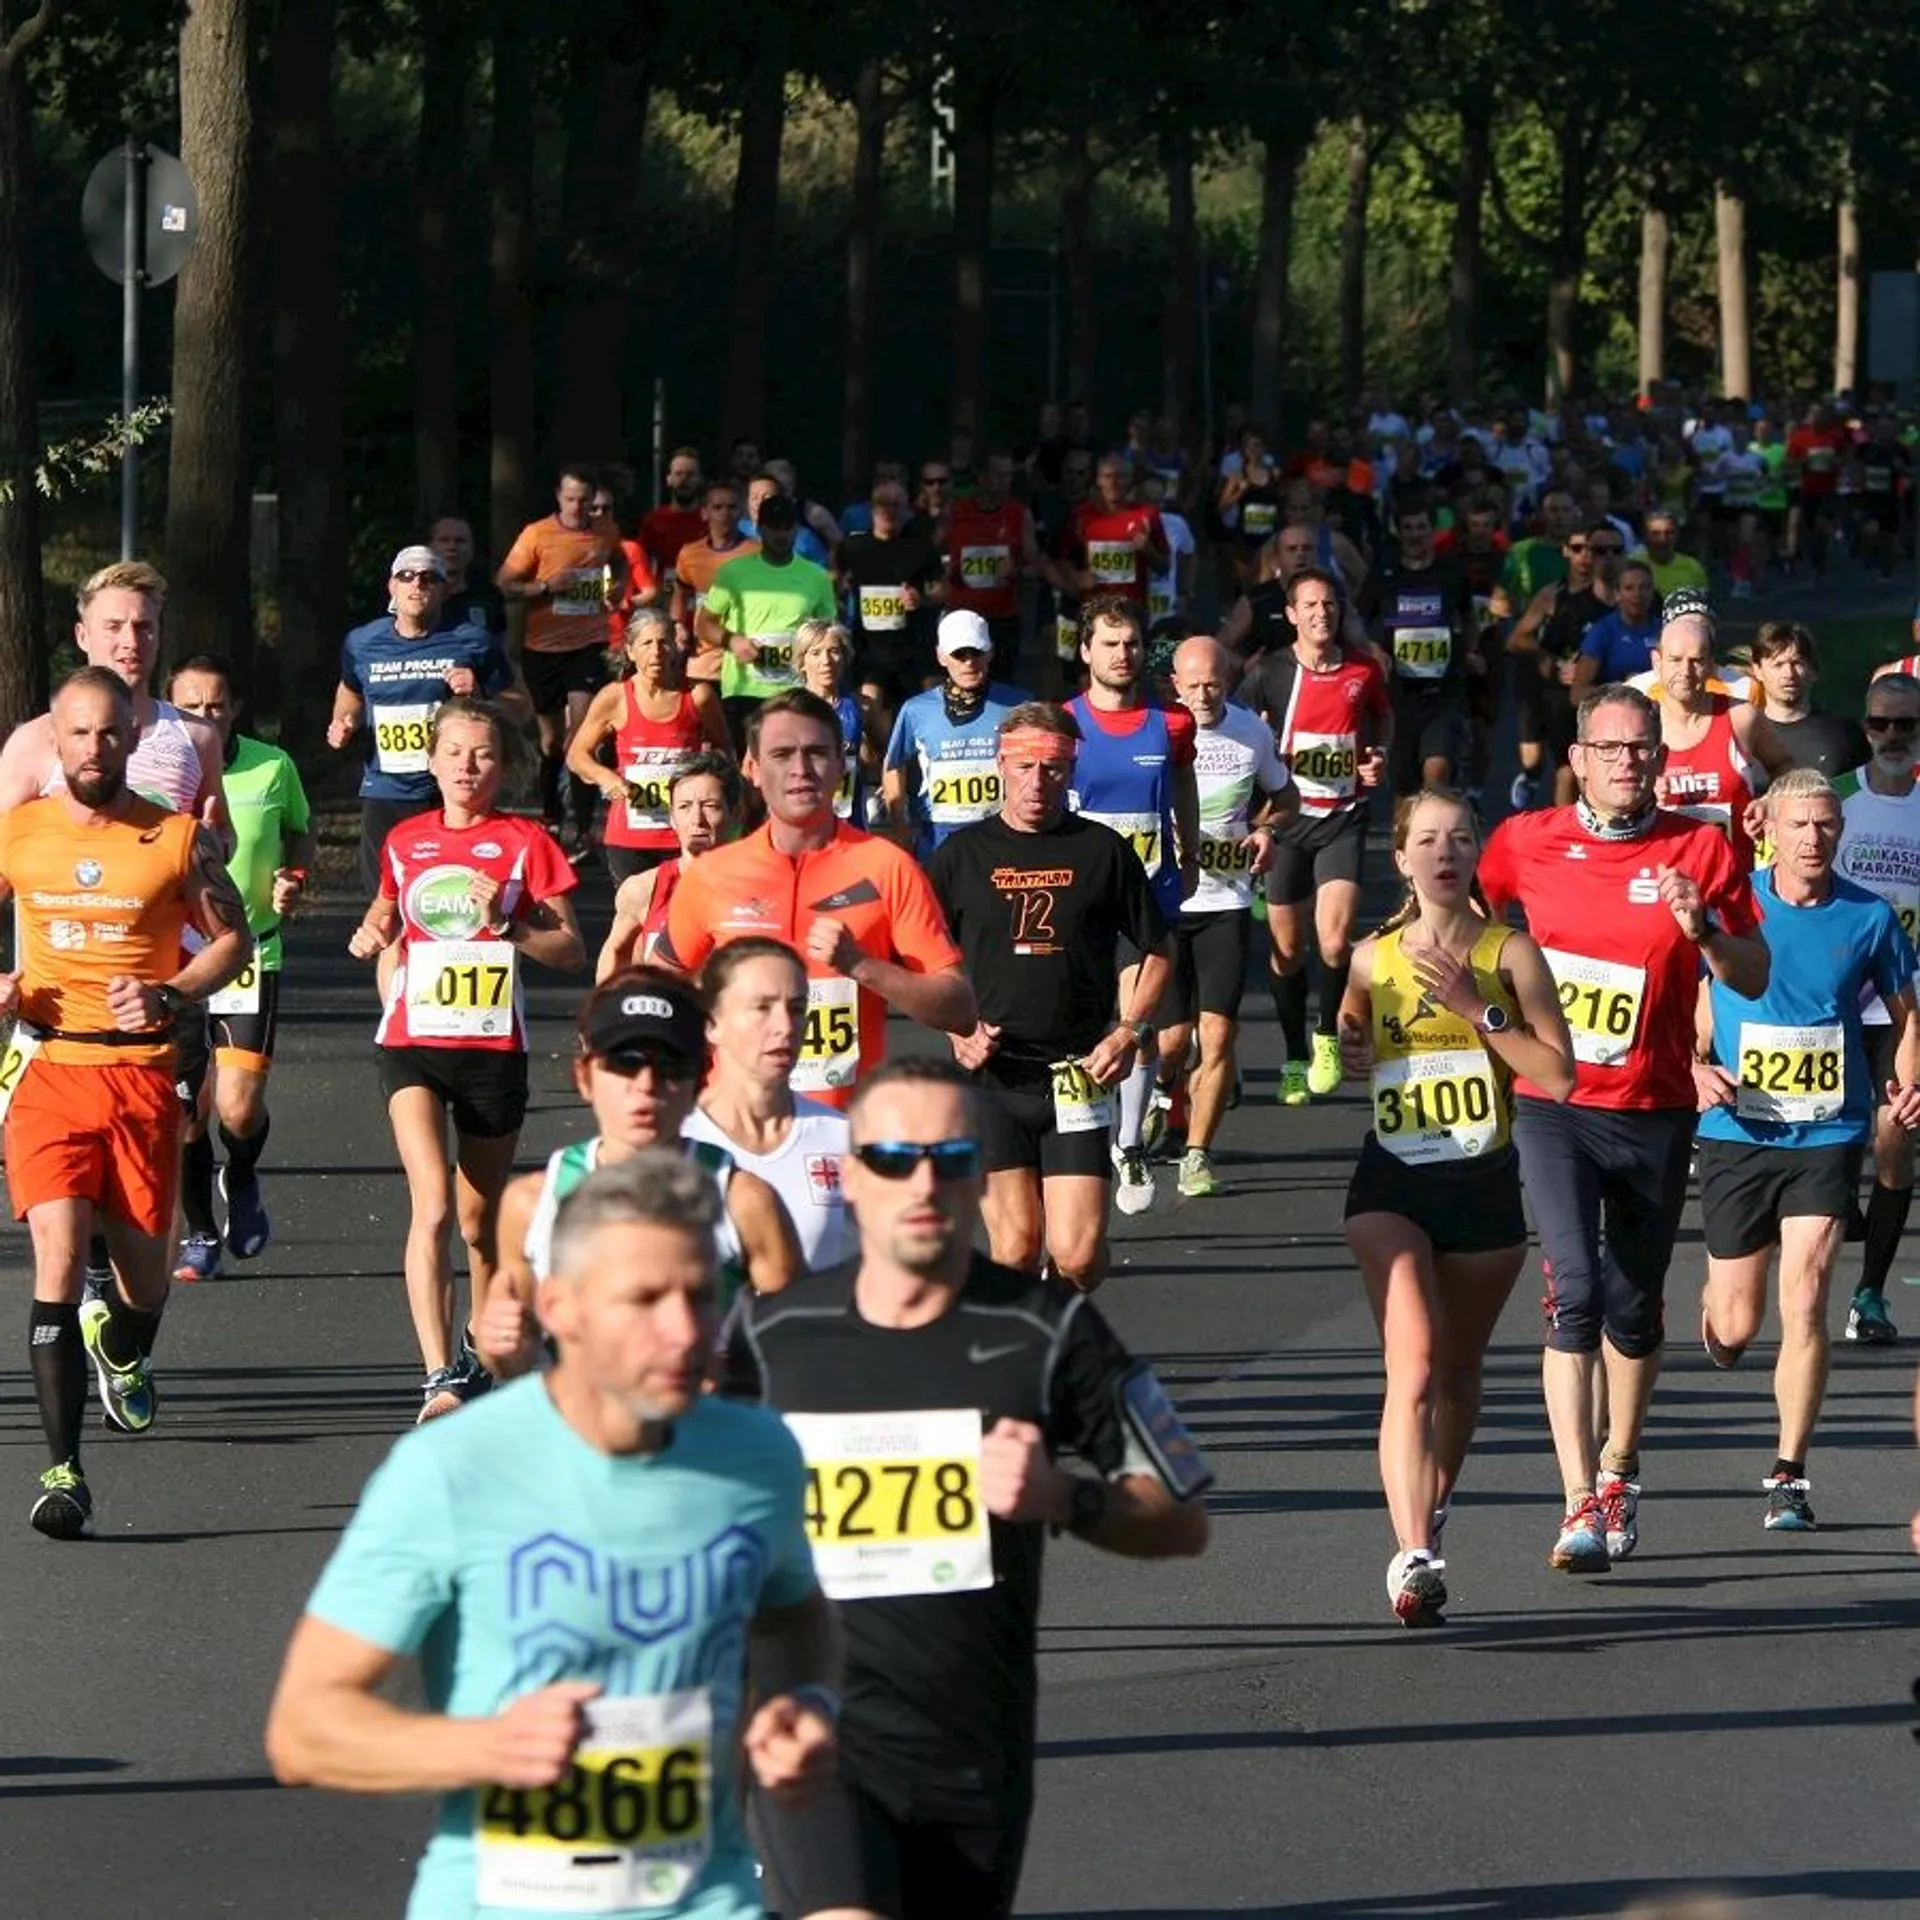 Kassel Marathon